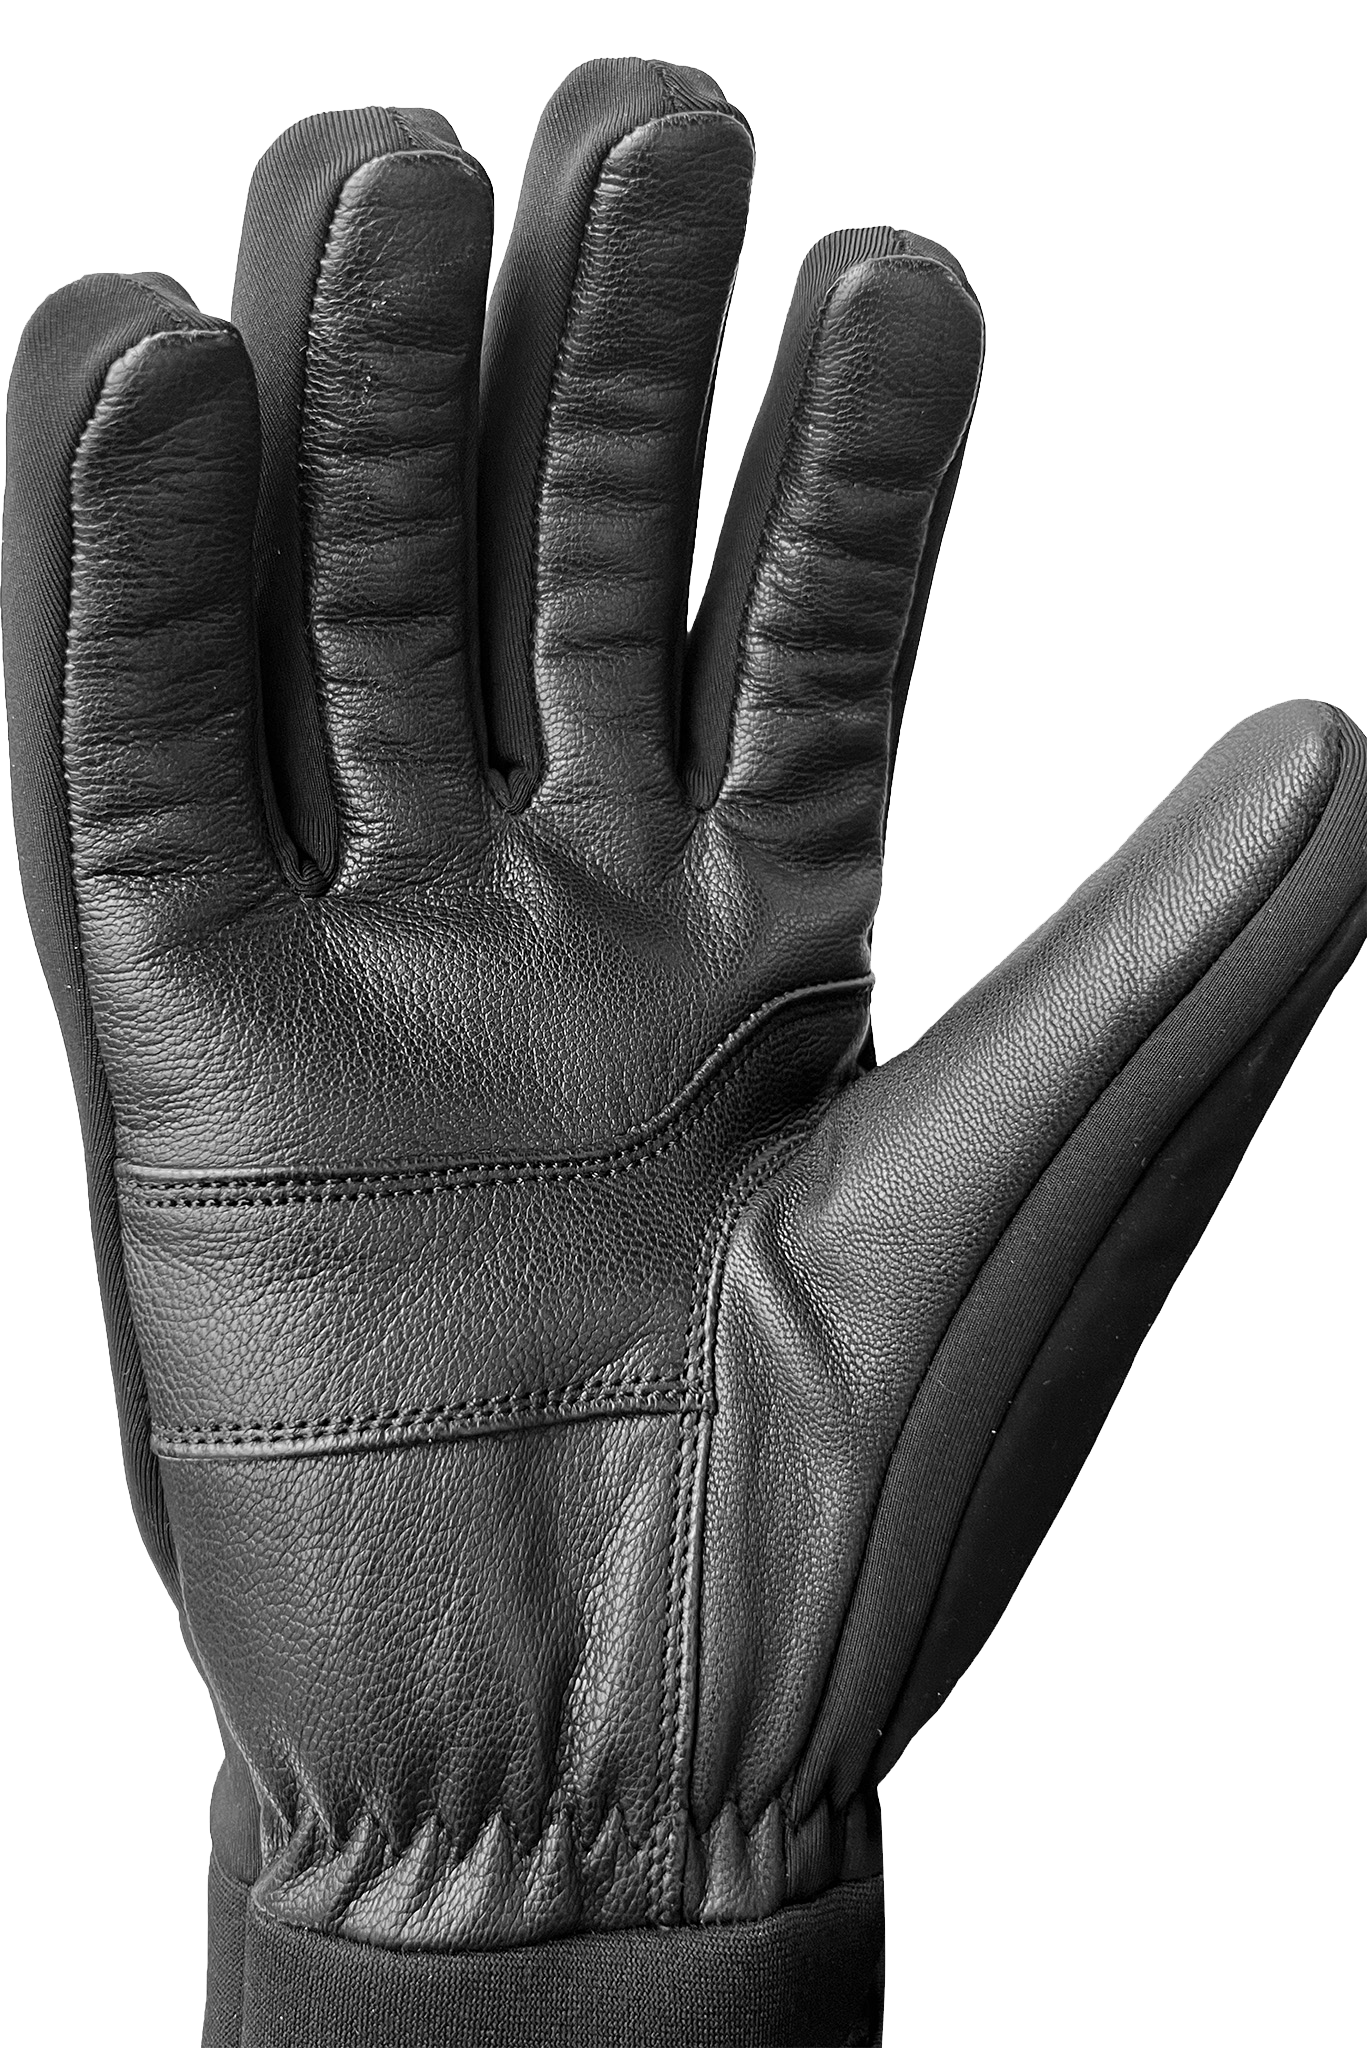 Trail Ridge Gloves - Adult-Glove-Auclair-Auclair Sports